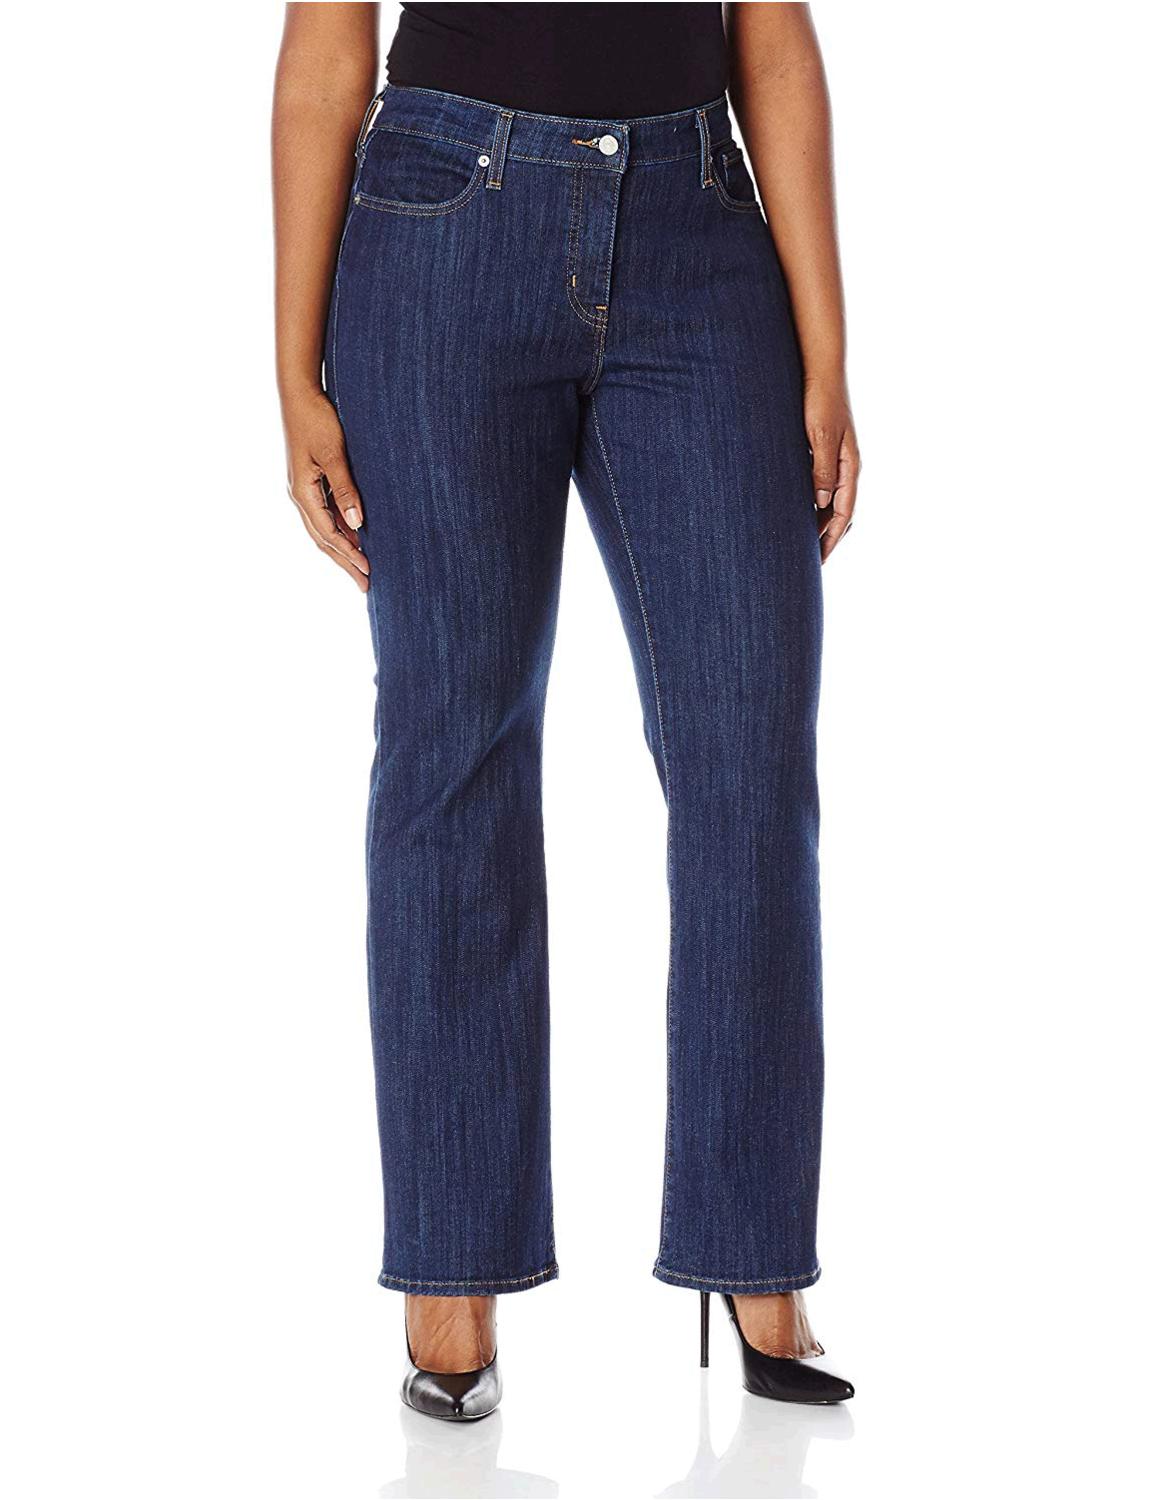 Levi's Women's Plus-Size 415 Classic Bootcut Jeans,, Storm Rider, Size ...